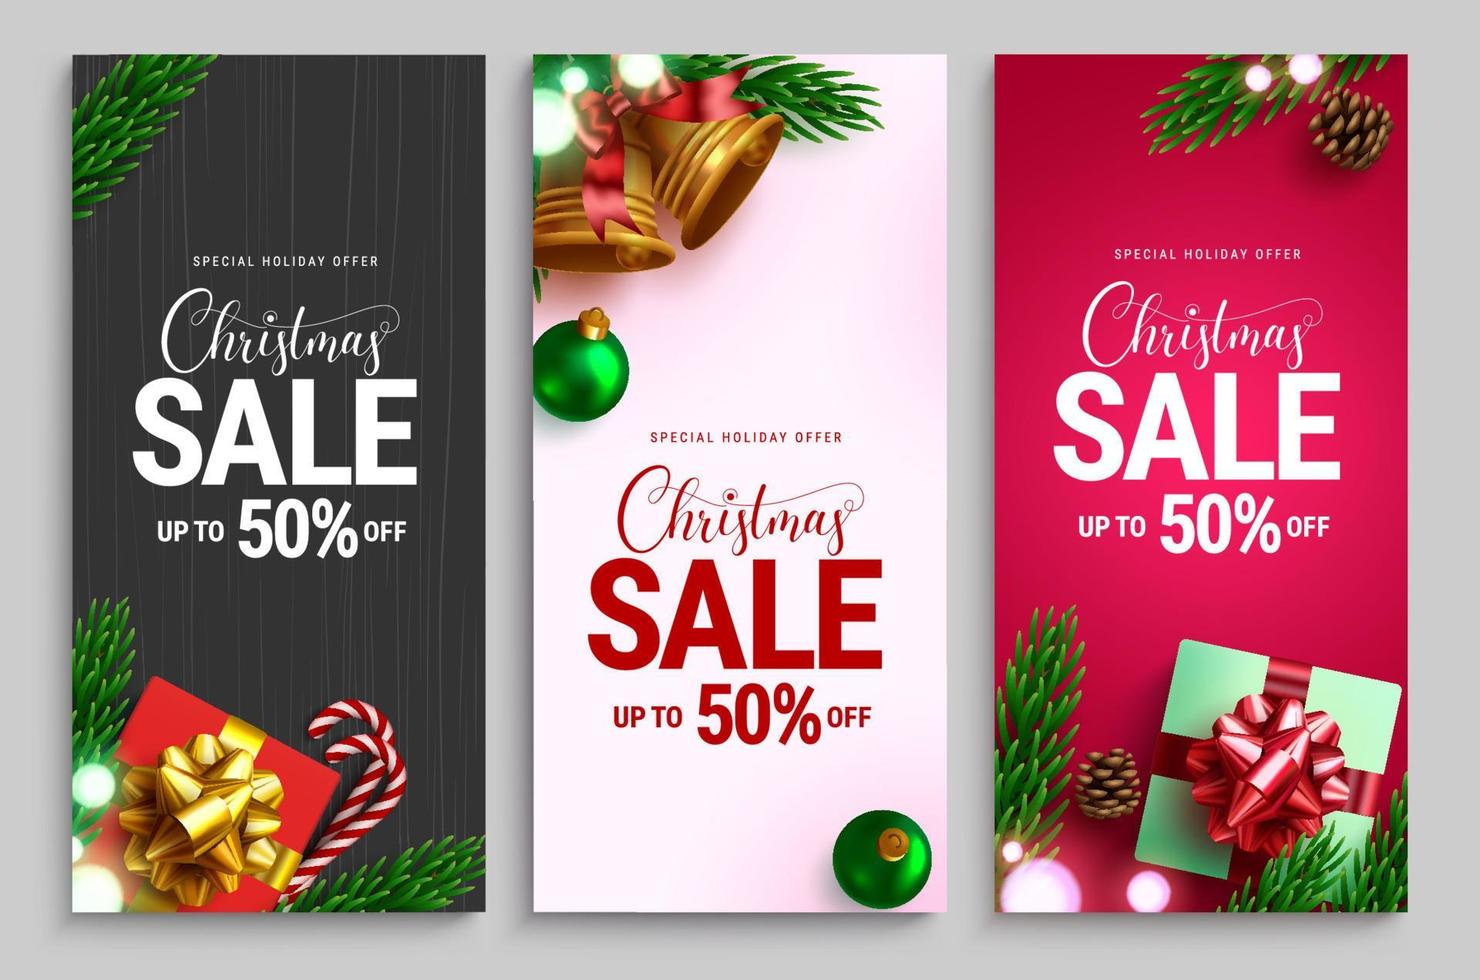 jul försäljning vektor affisch set. julrea semester erbjudandetext med kampanjrabatt för xmas säsongsbetonad shopping annons banner samling. vektor illustration.